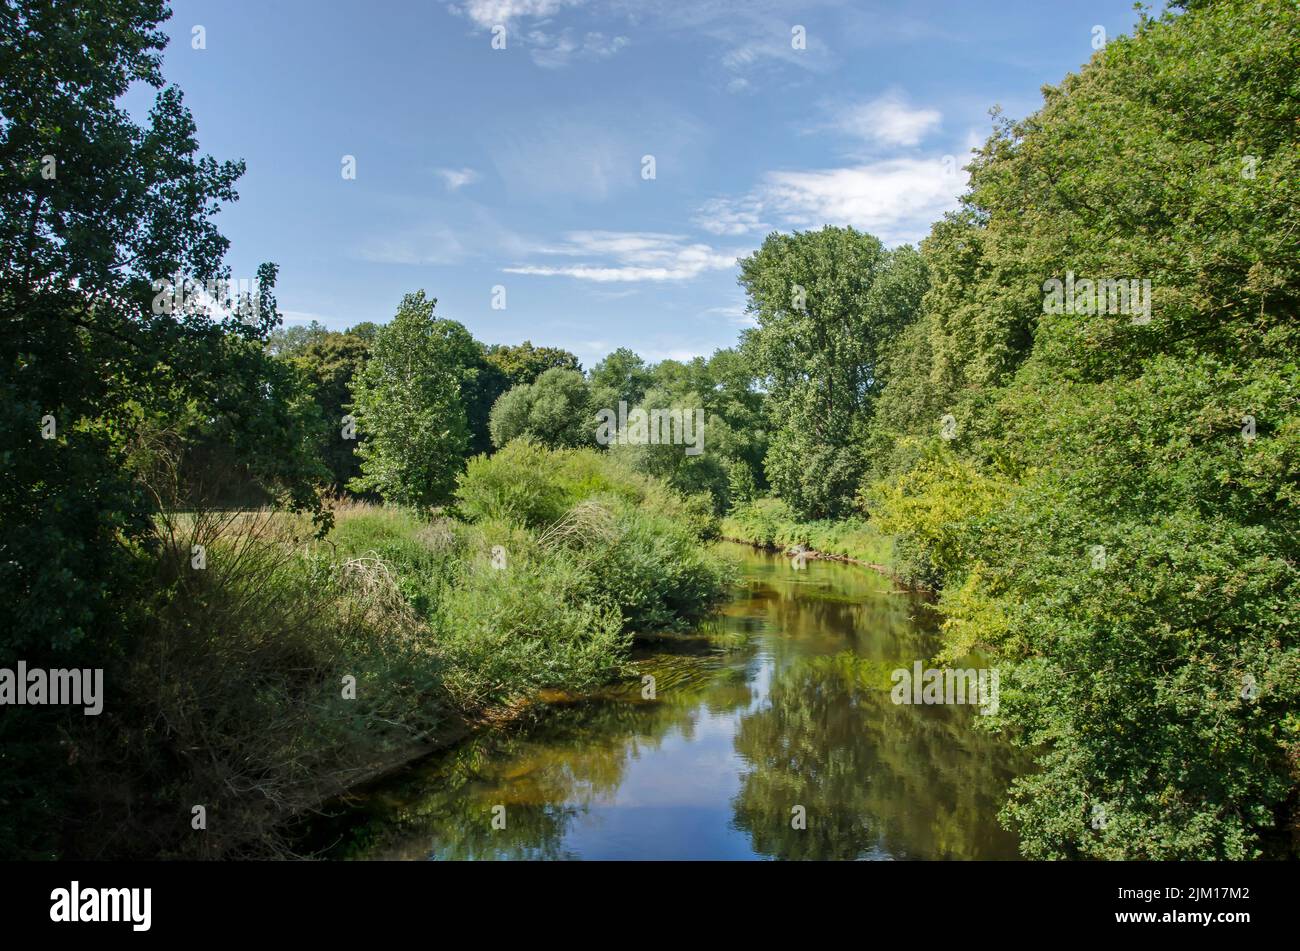 Vue le long du ruisseau tranquille de la rivière EMS dans un paysage luxuriant et verdoyant près de Münster, Allemagne, lors d'une journée d'été Banque D'Images